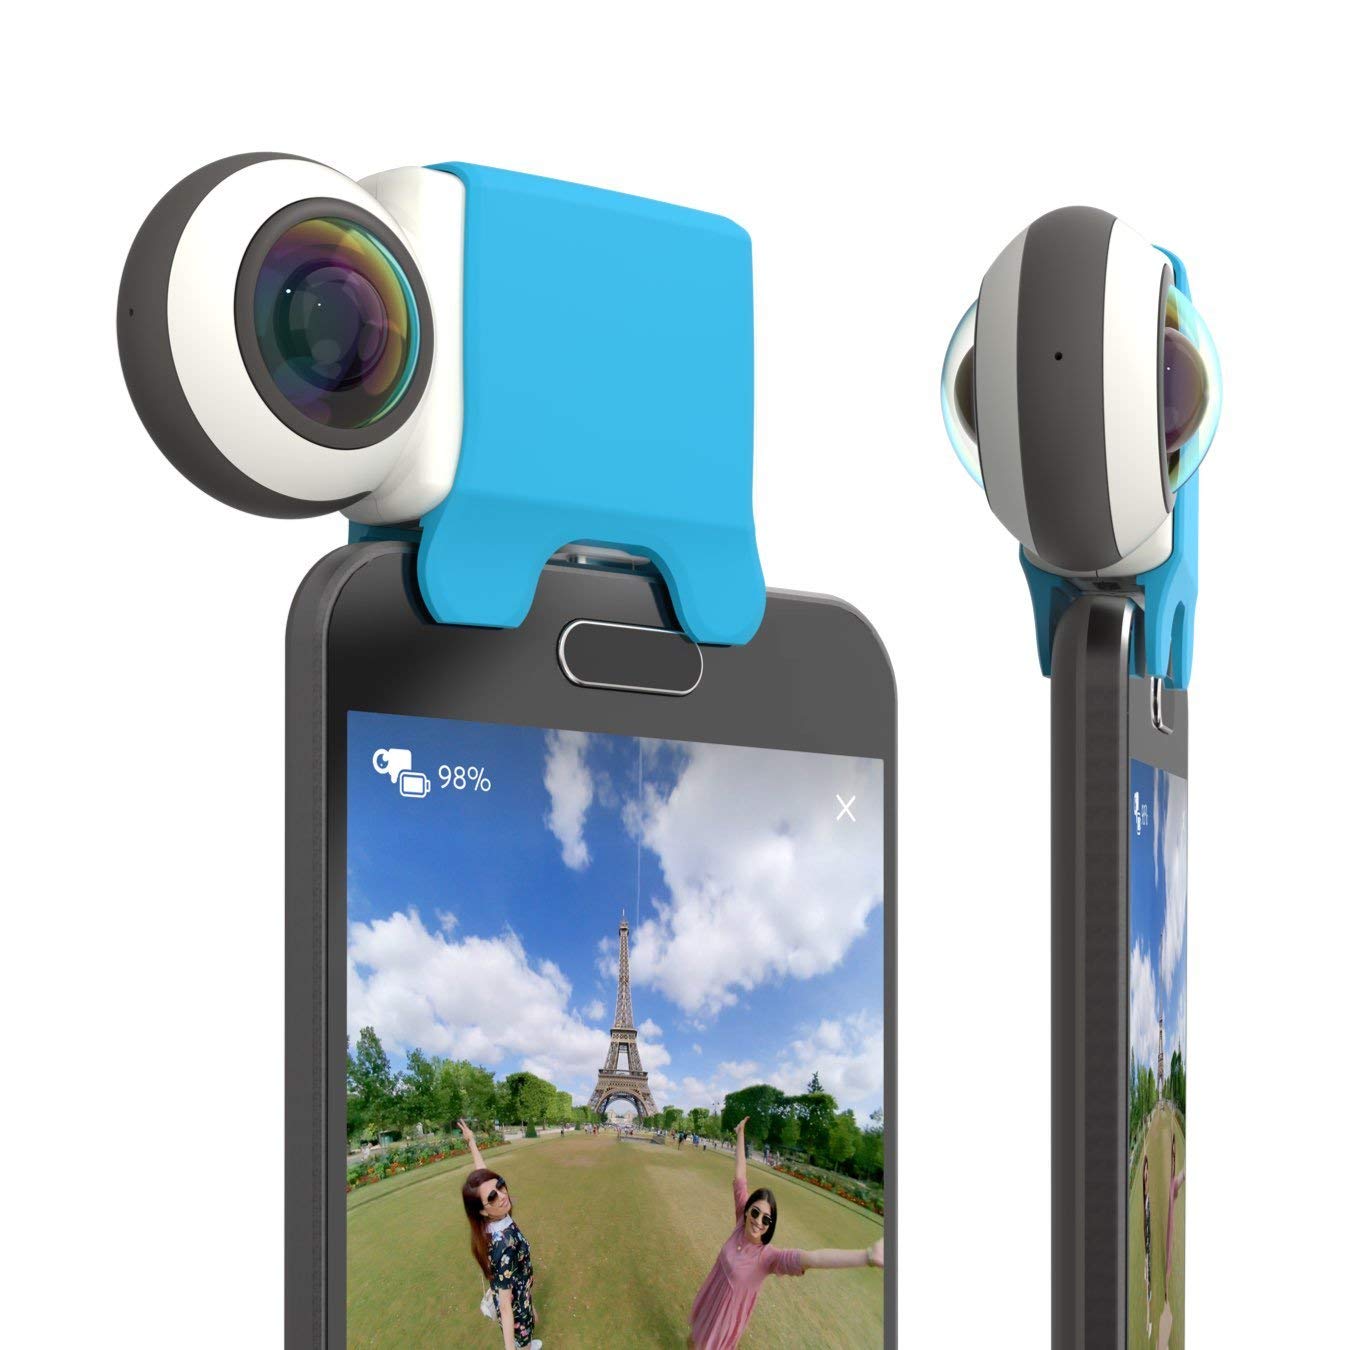 Giroptic iO HD 360 degree camera for iPhone/iPad 2